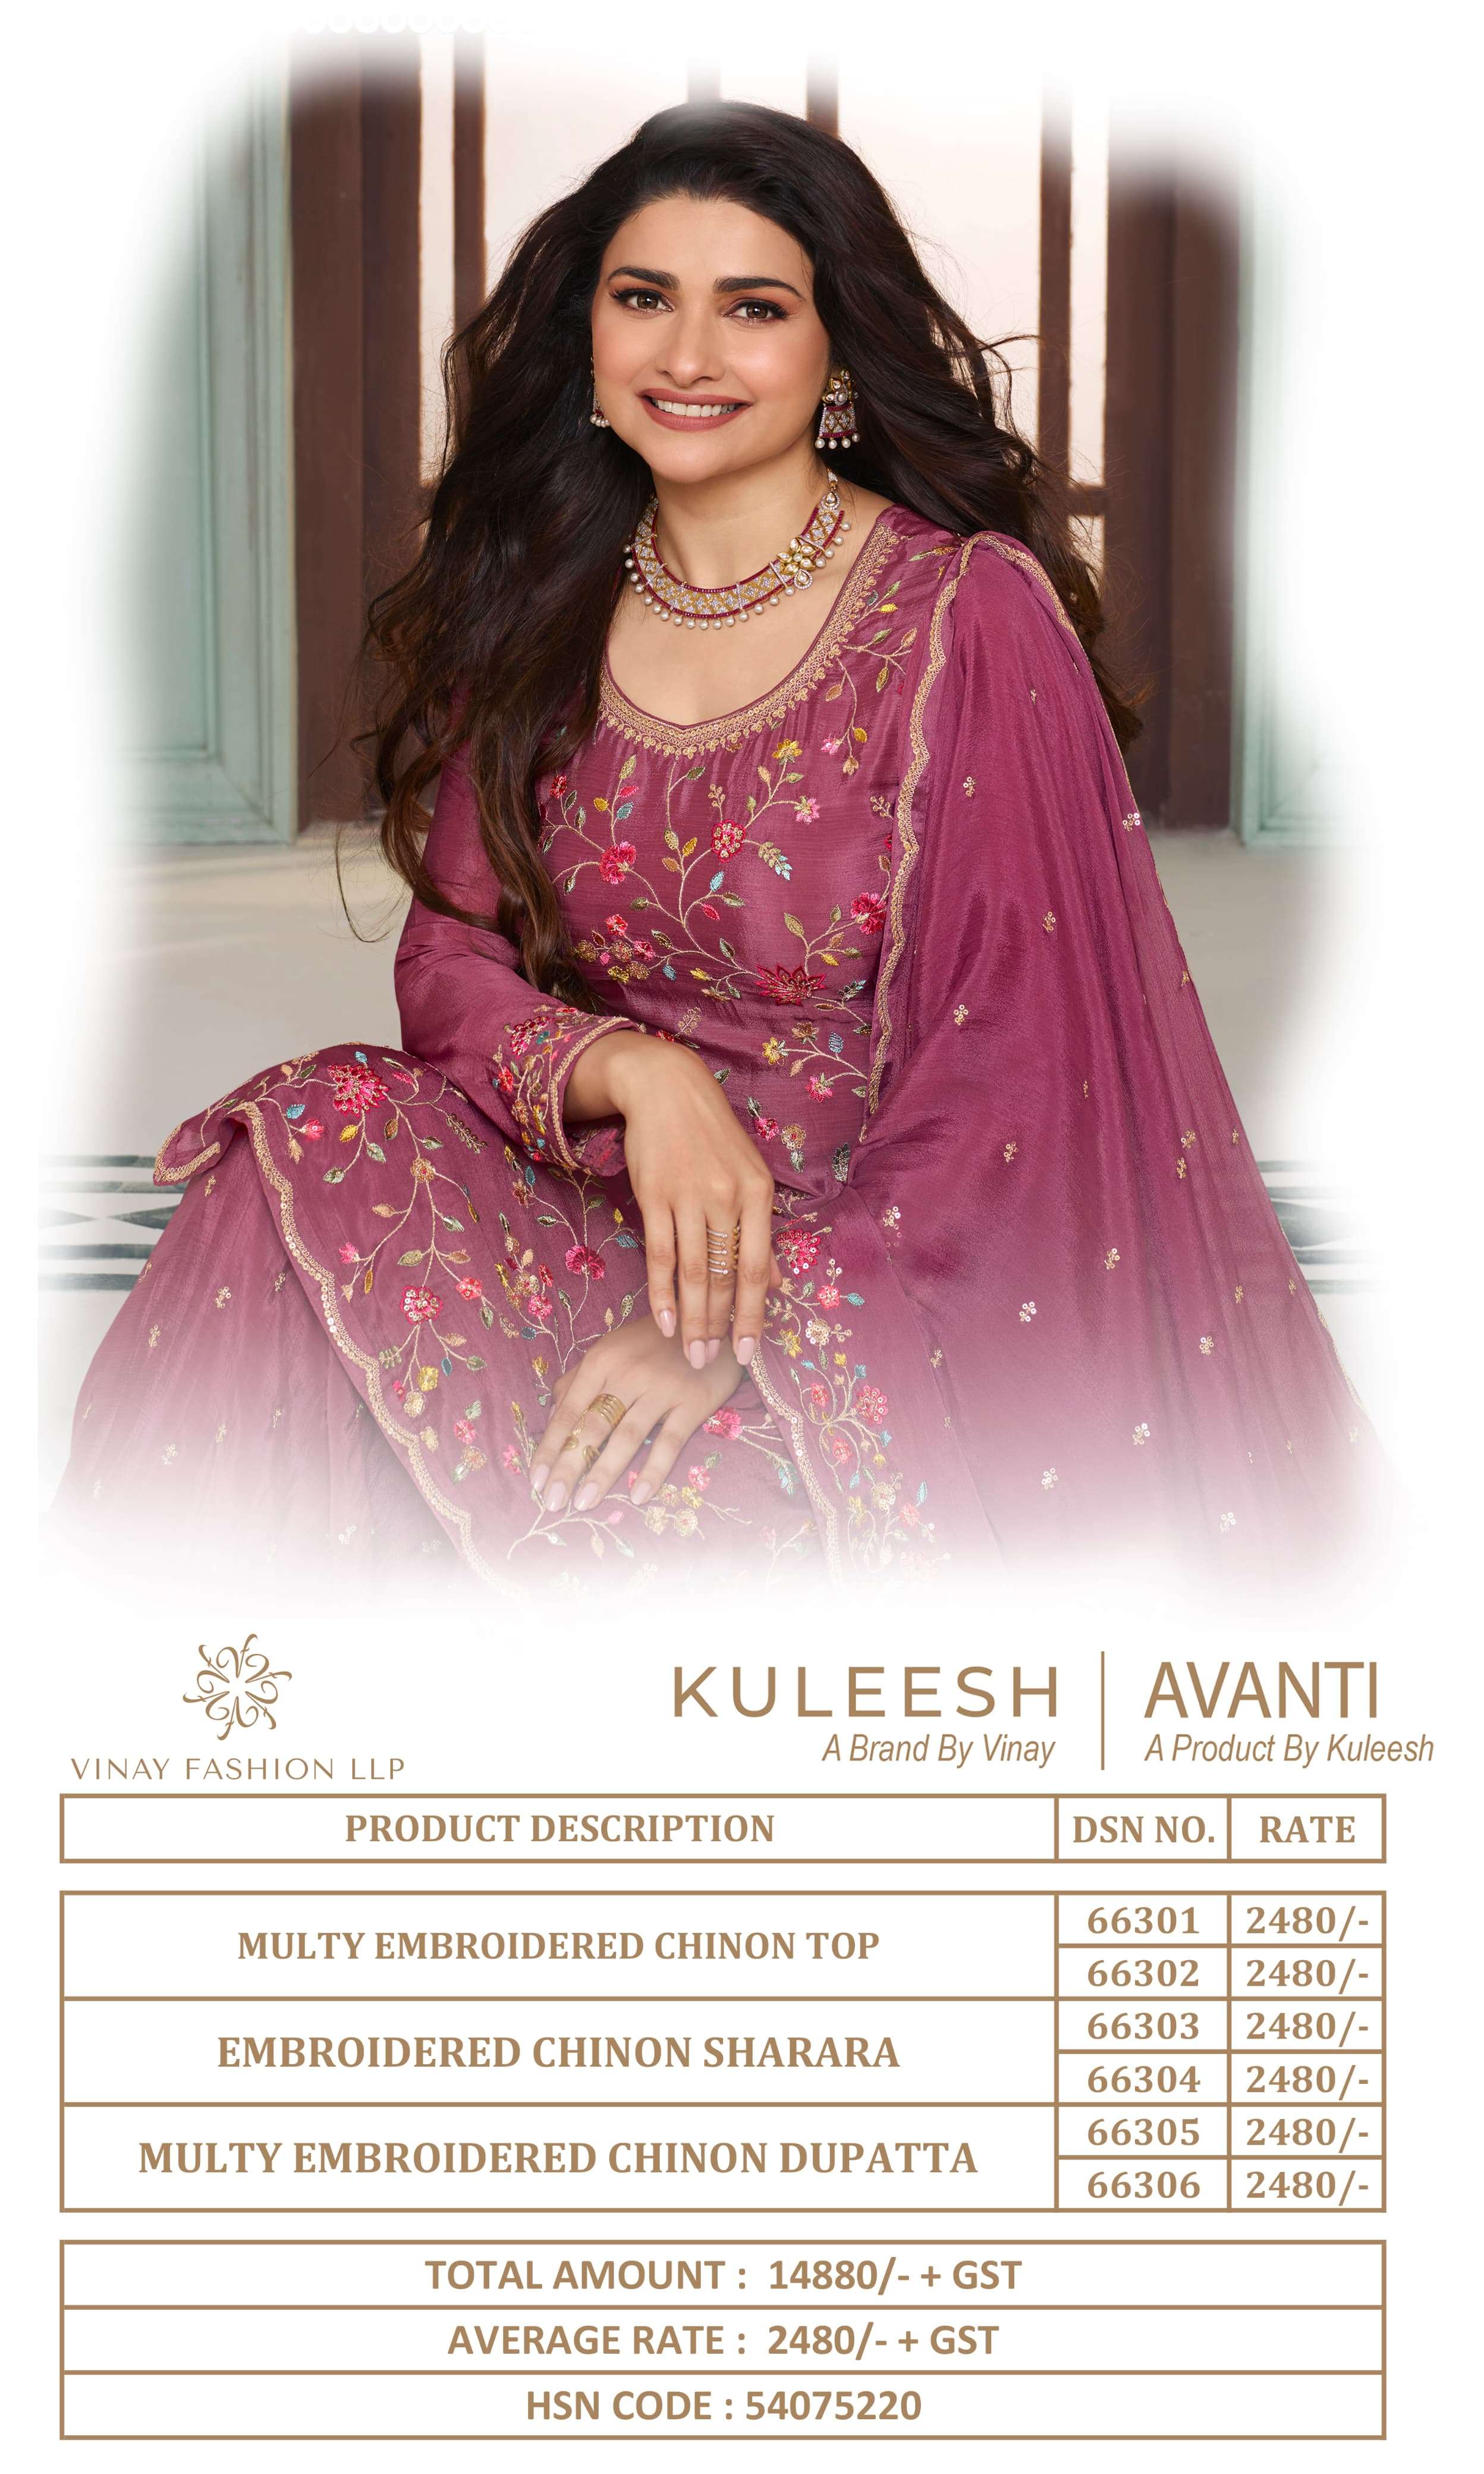 vinay fashion kuleesh avanti 66301-66306 series latest designer salwar kameez wholesaler surat gujarat